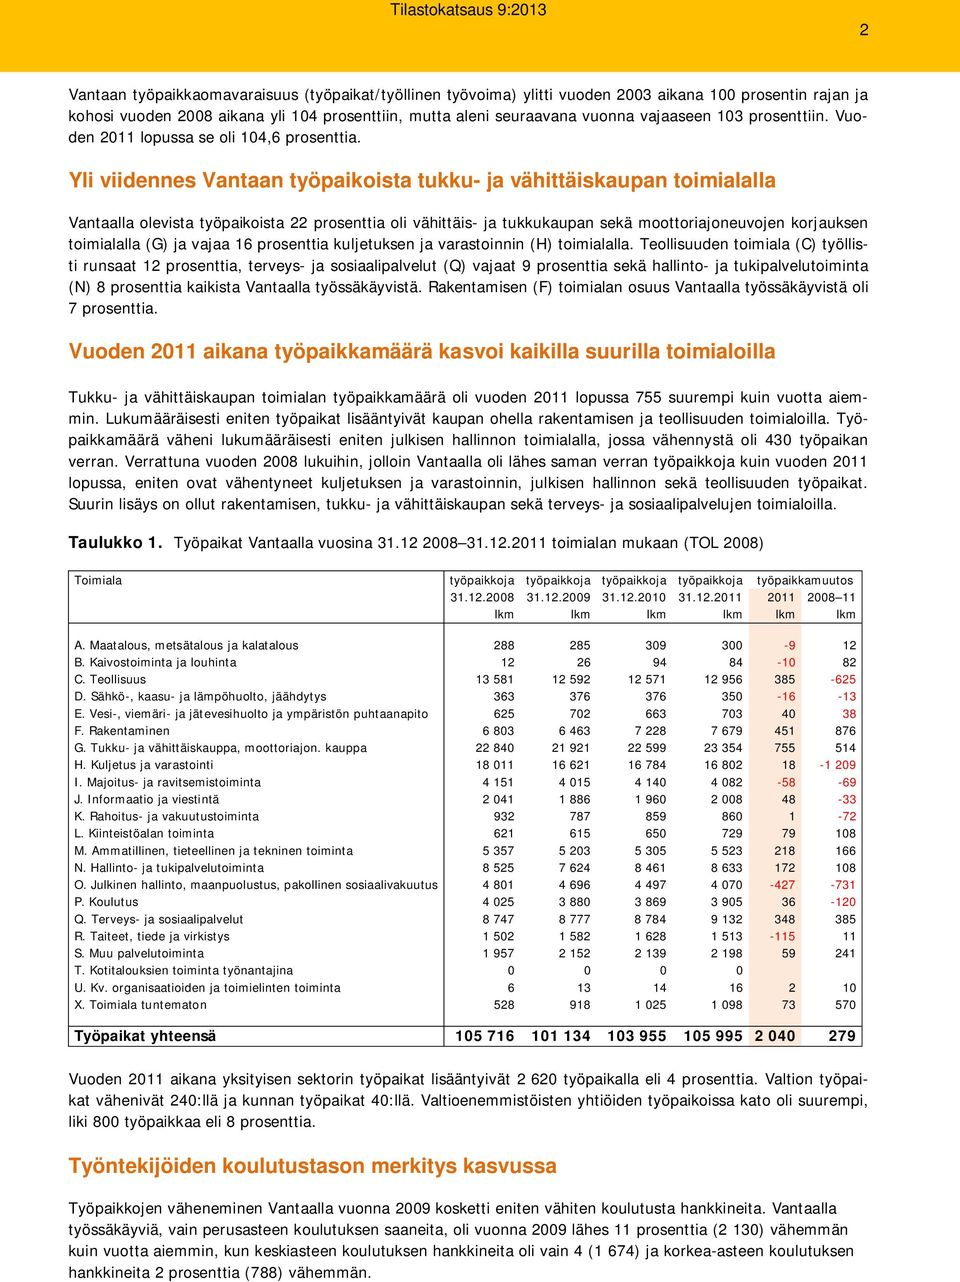 Yli viidennes Vantaan työpaikoista tukku- ja vähittäiskaupan toimialalla Vantaalla olevista työpaikoista 22 prosenttia oli vähittäis- ja tukkukaupan sekä moottoriajoneuvojen korjauksen toimialalla